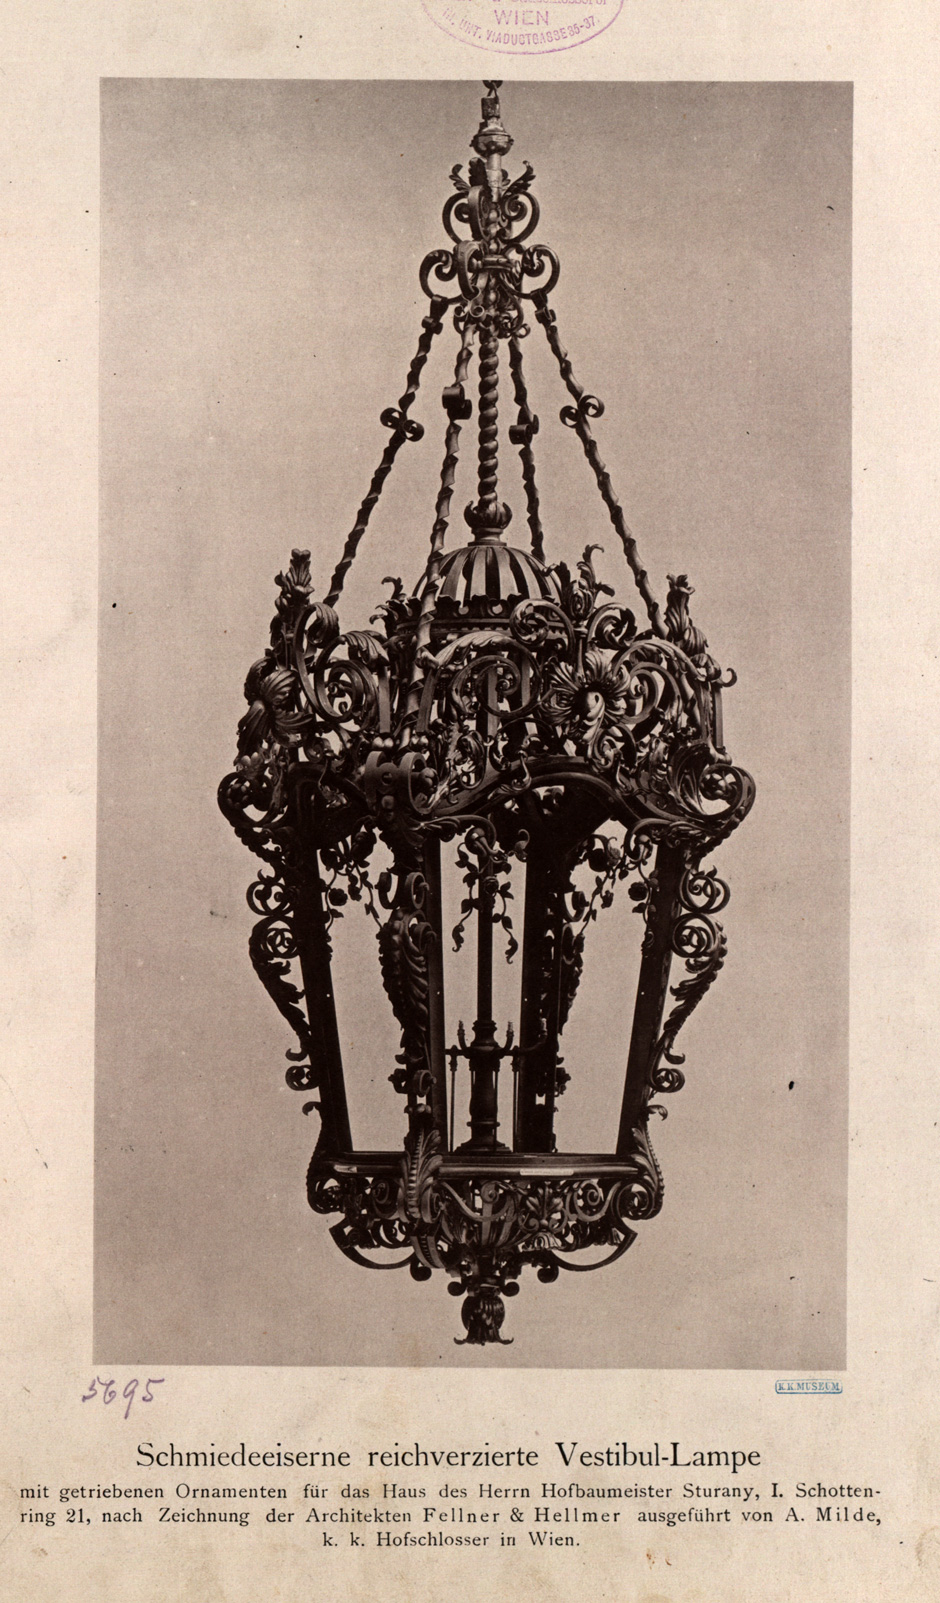 Archivbild: Palais Sturany, Schmiedeeiserne reichverzierte Vestibül-Lampe mit getriebenen Ornamenten